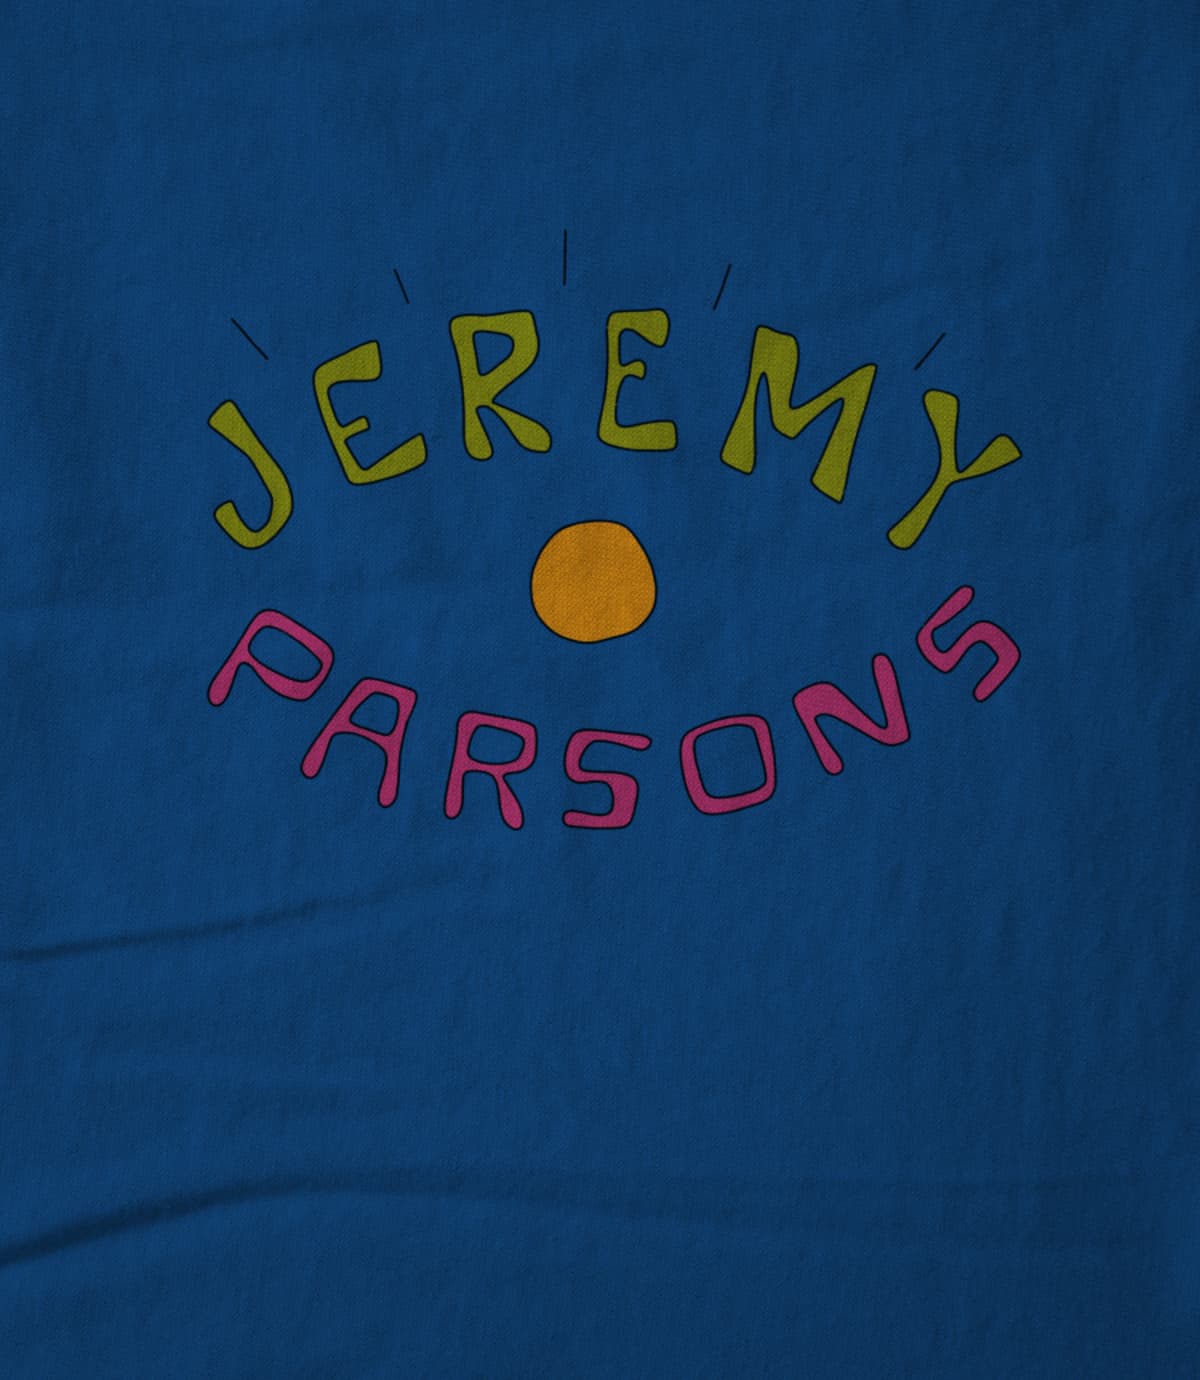 Jeremy Parsons